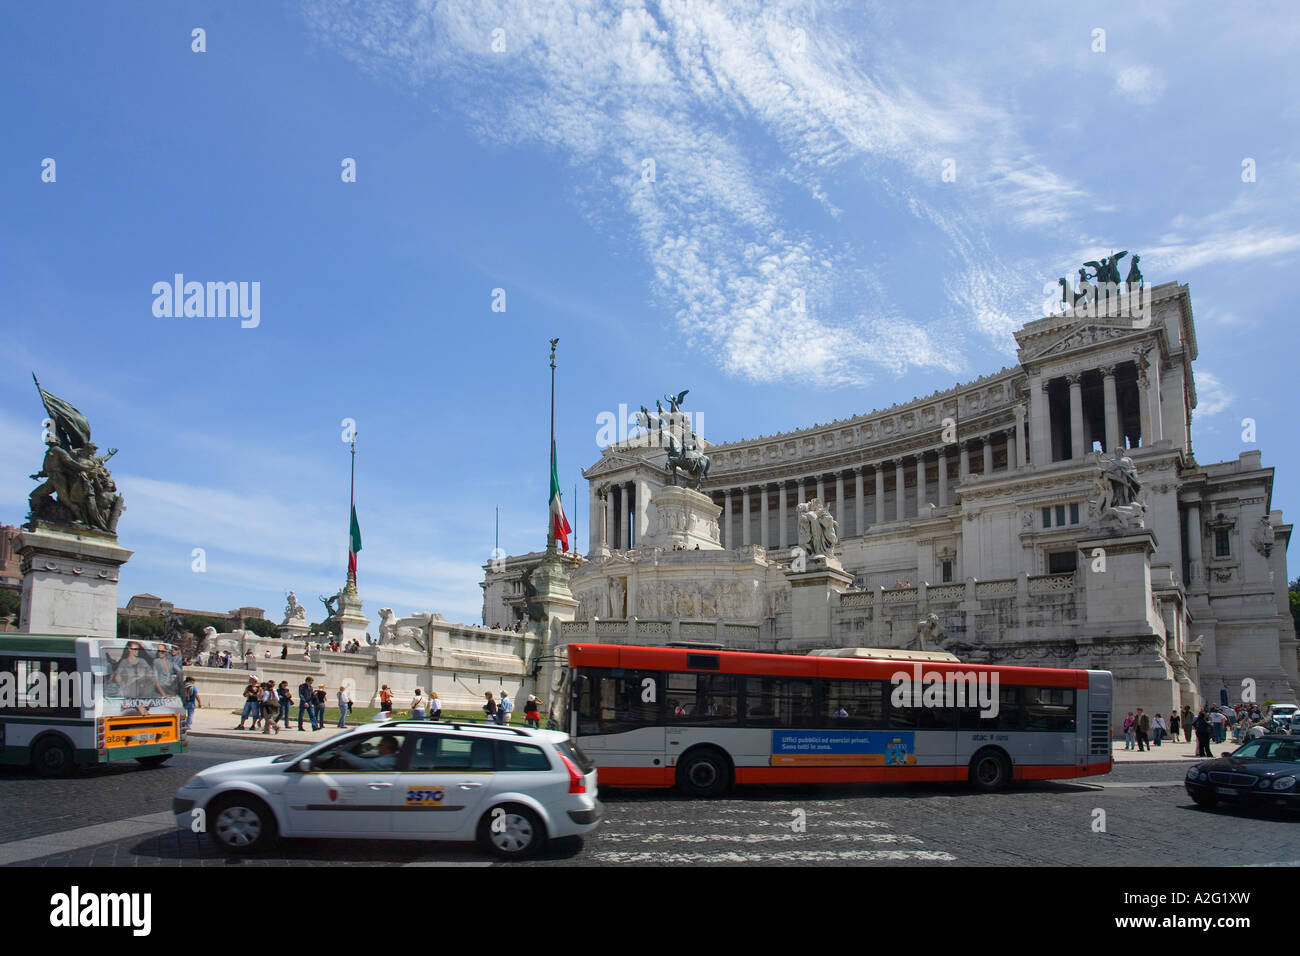 Monument of Vittorio Emanuele II Rome Italy Stock Photo